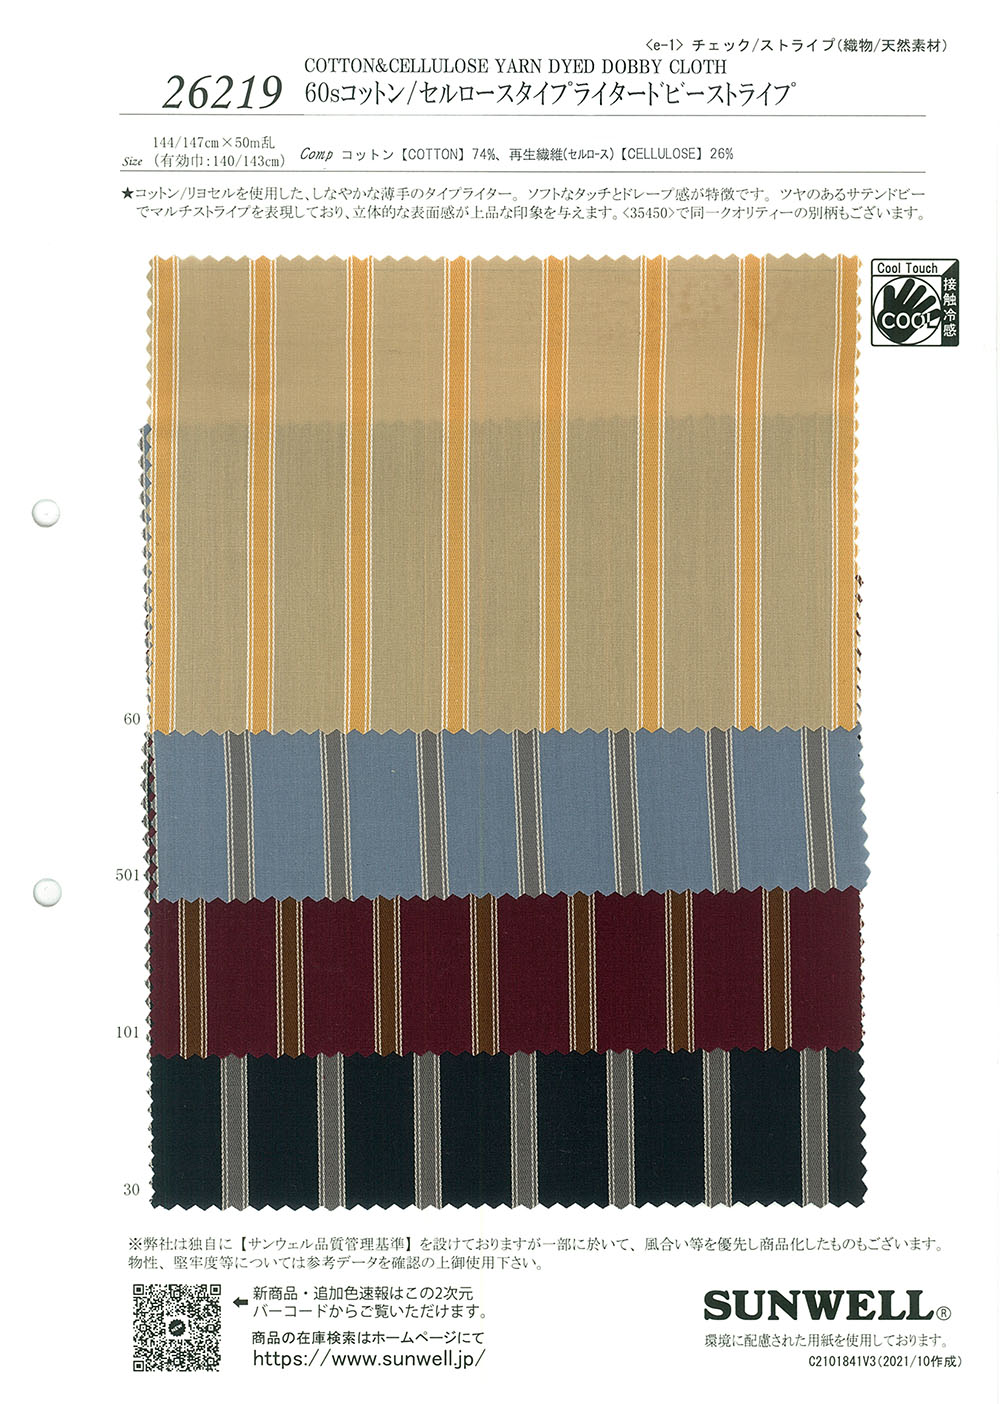 26219 60 Tela De Máquina De Escribir De Algodón/celulosa De Un Solo Hilo Con Rayas Dobby[Fabrica Textil] SUNWELL